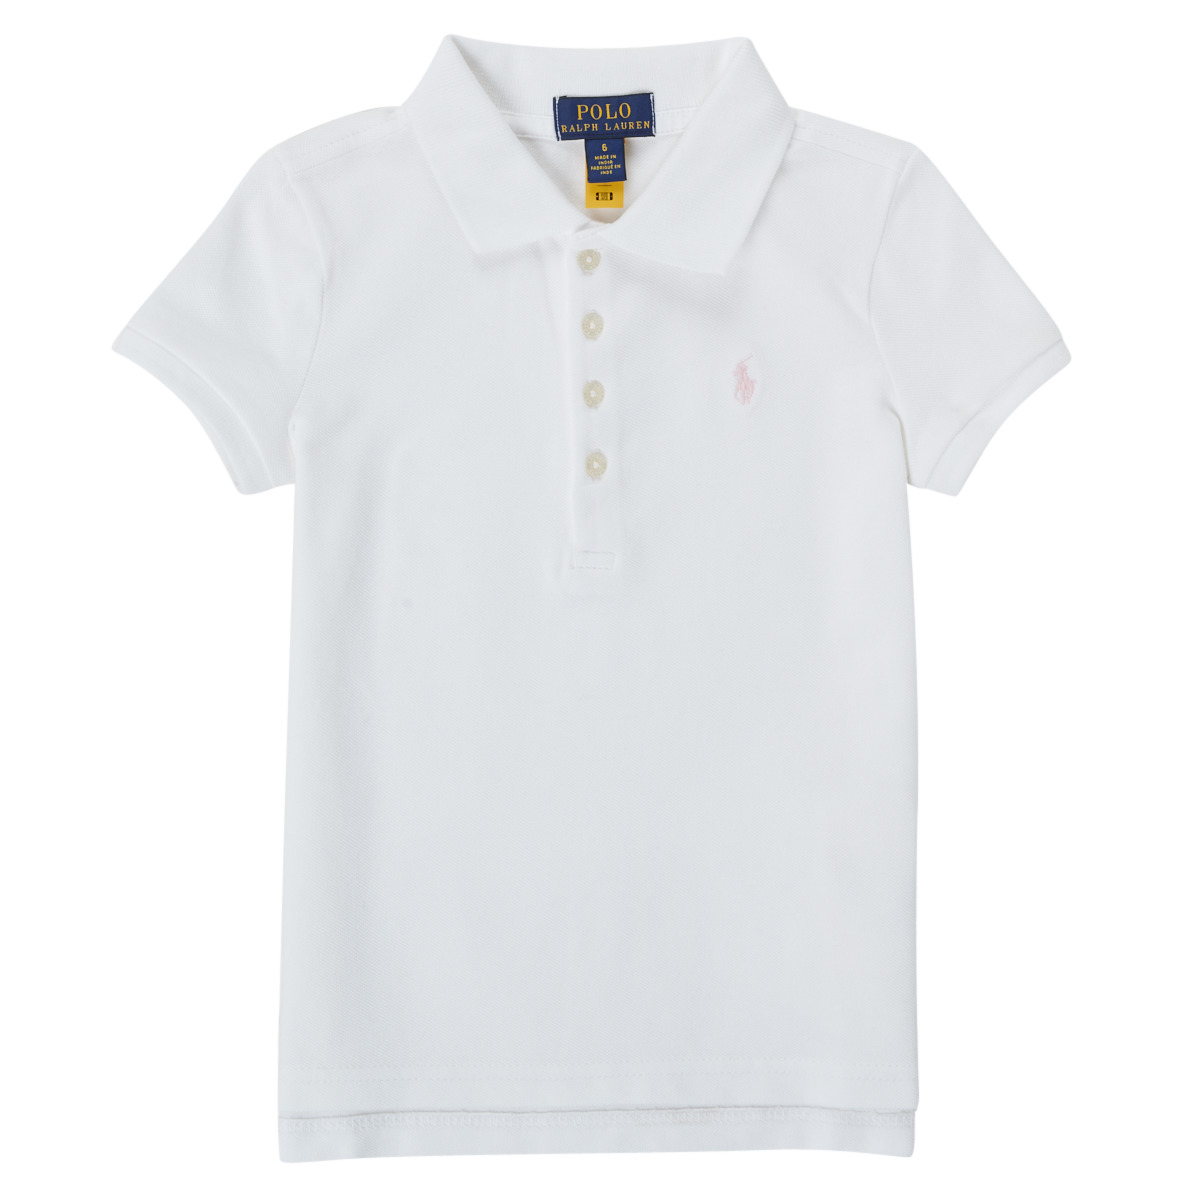 Textil Rapariga long sleeve button collar polo shirt TOULLA Branco